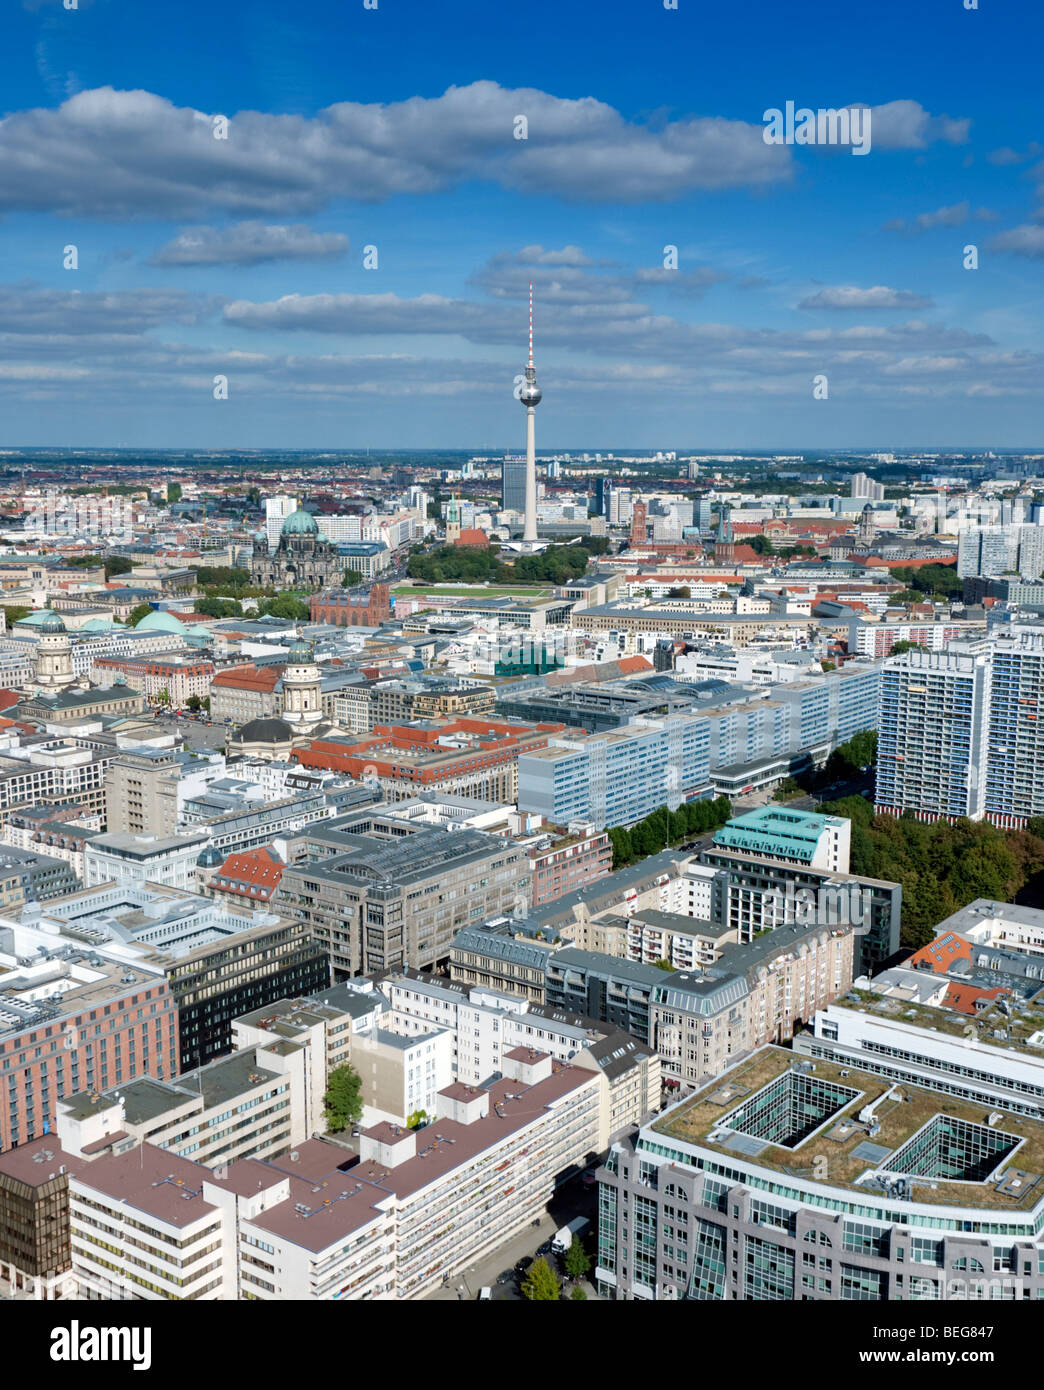 Vue sur les toits de Berlin avec tour de télévision Fernsehturm Alexanderplatz ou à l'arrière en Allemagne Banque D'Images